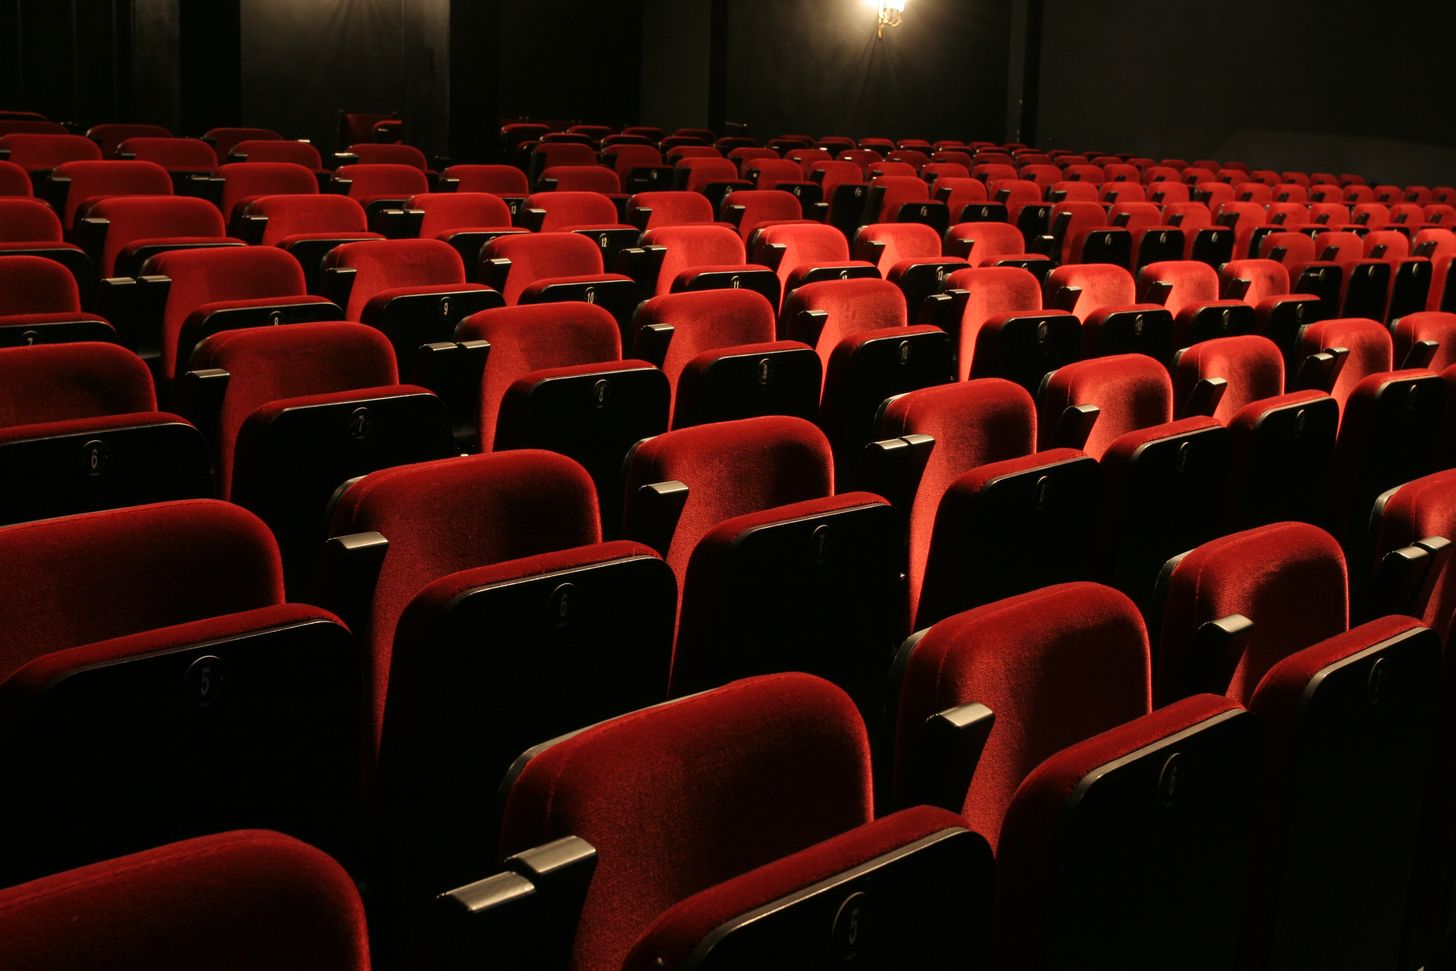 На фото - зрительный зал Малого драматического театра - Театра Европы. Фото с сайта театра.